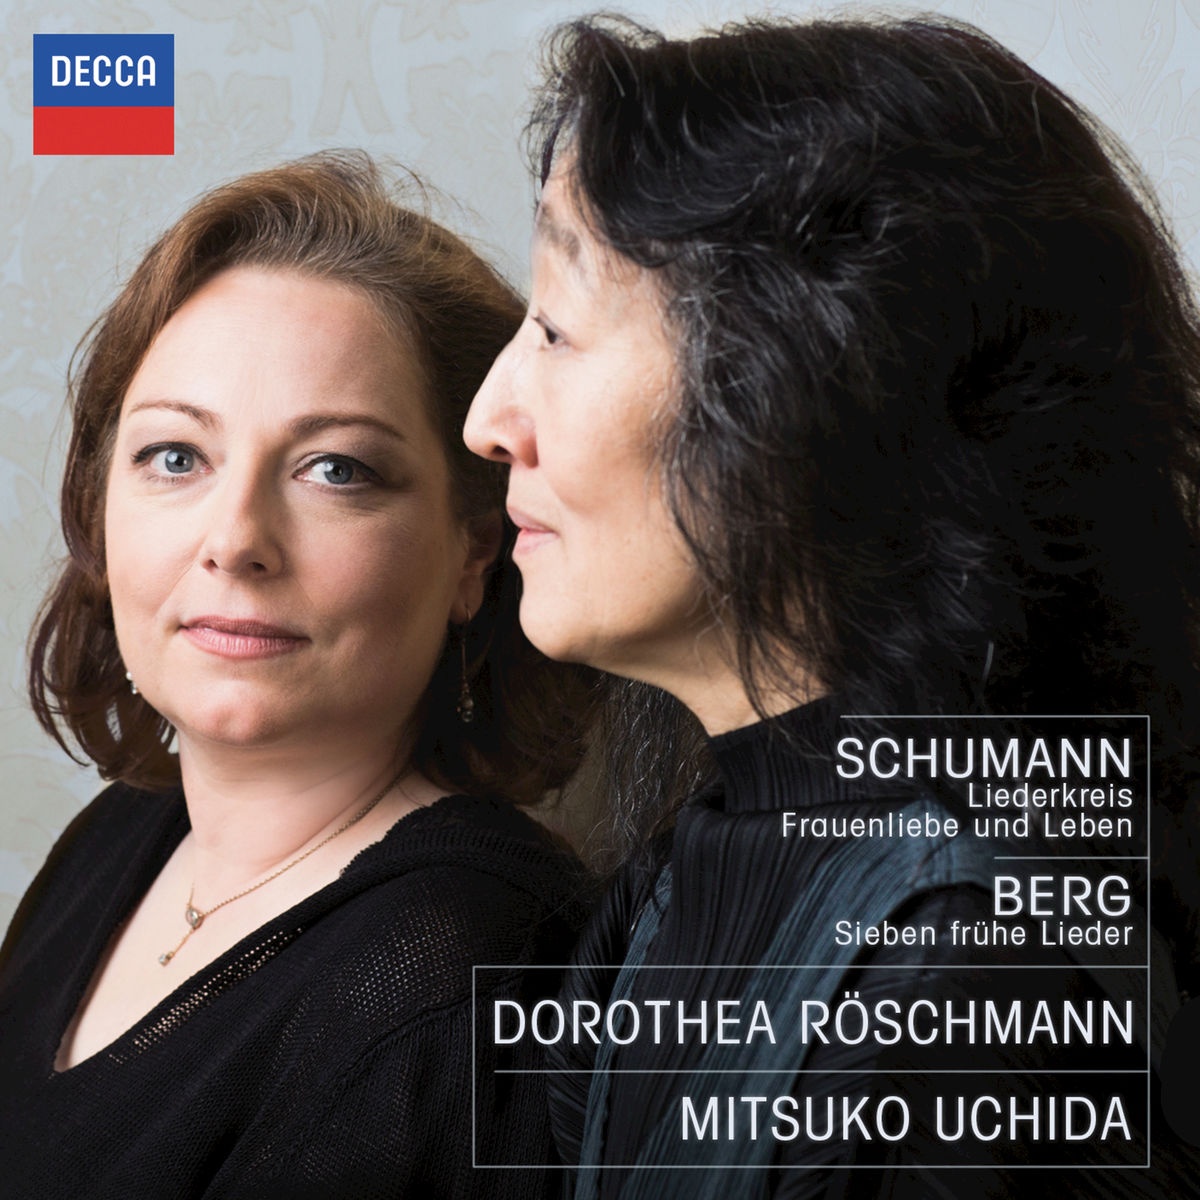 Schumann: Liederkreis, Op. 39  In der Fremde " Ich h r die Bachlein rauschen"